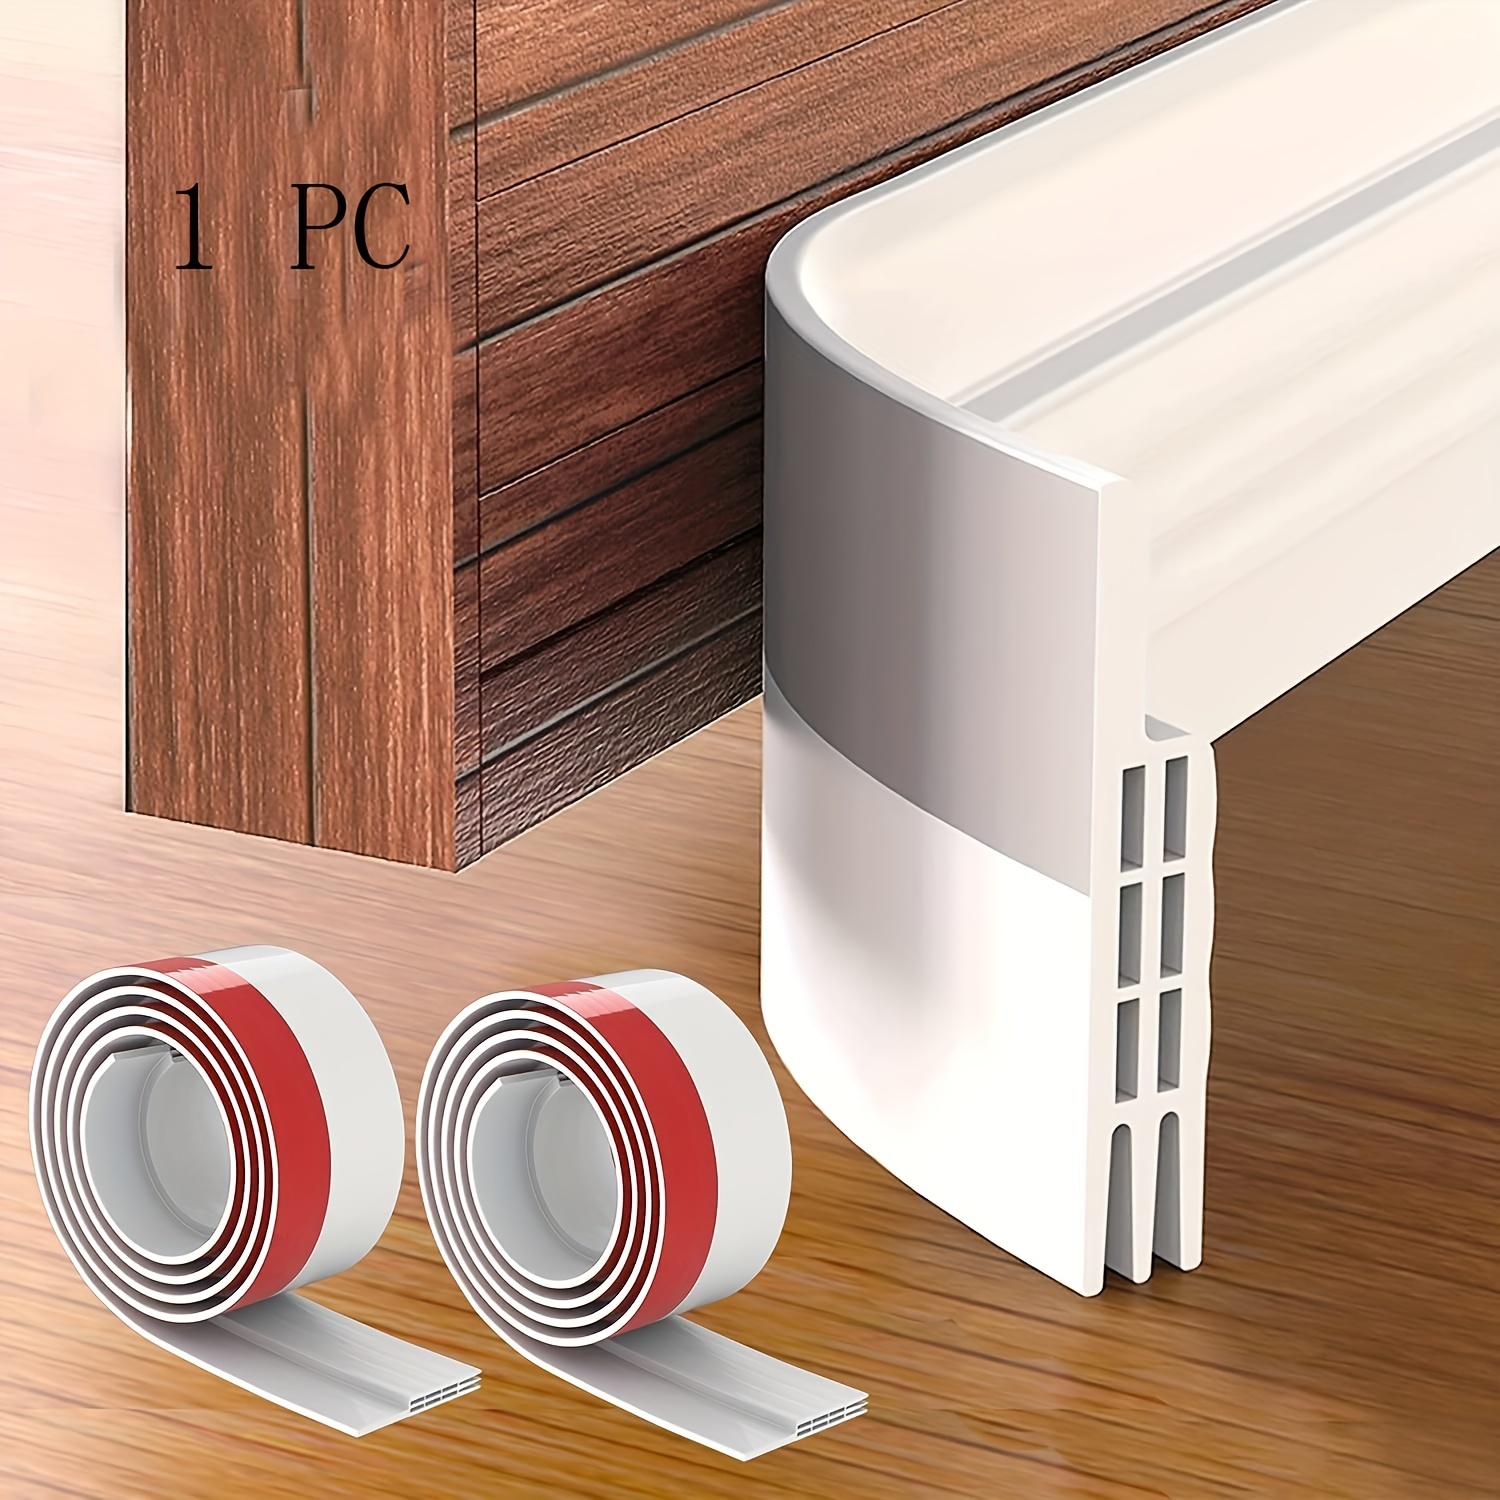 Vellure® Bas de porte anti-courant d'air & étanchéité porte - NOUVEAU bas  de porte isolant (rapide à installer), idéal pour l'isolation contre le  froid, le bruit & l'humidité (1 x blanc) 